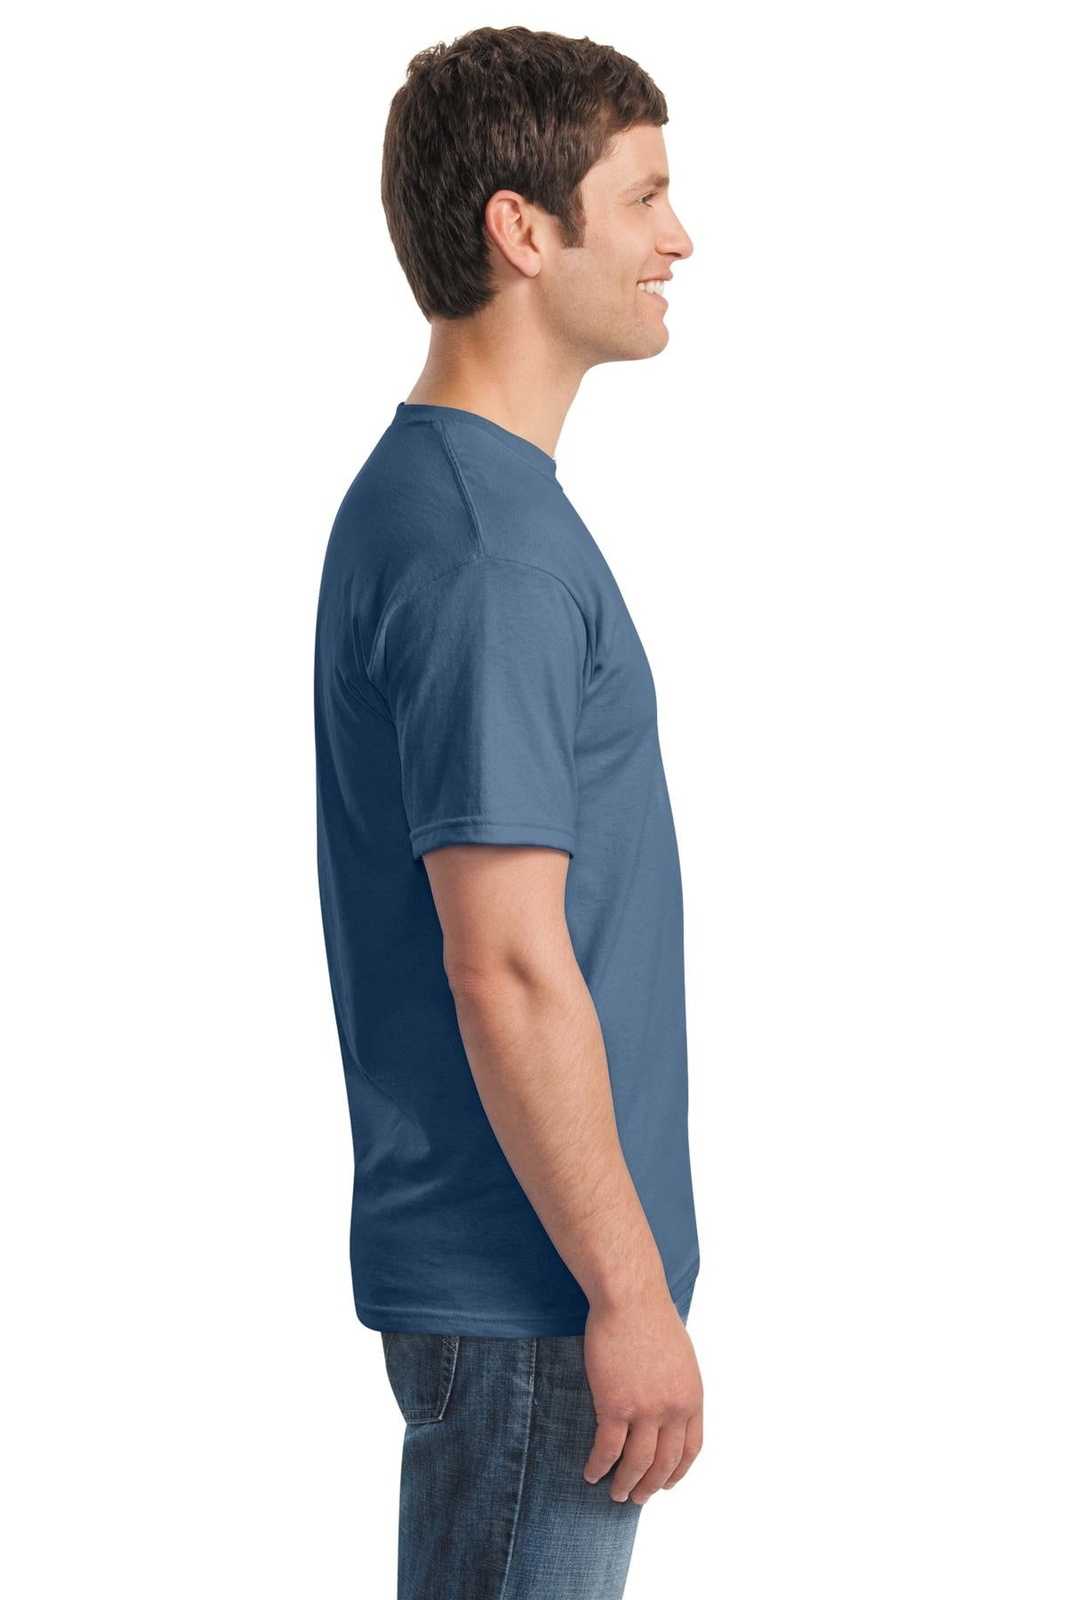 Gildan 5000 Heavy Cotton 100% Cotton T-Shirt - Indigo Blue - HIT a Double